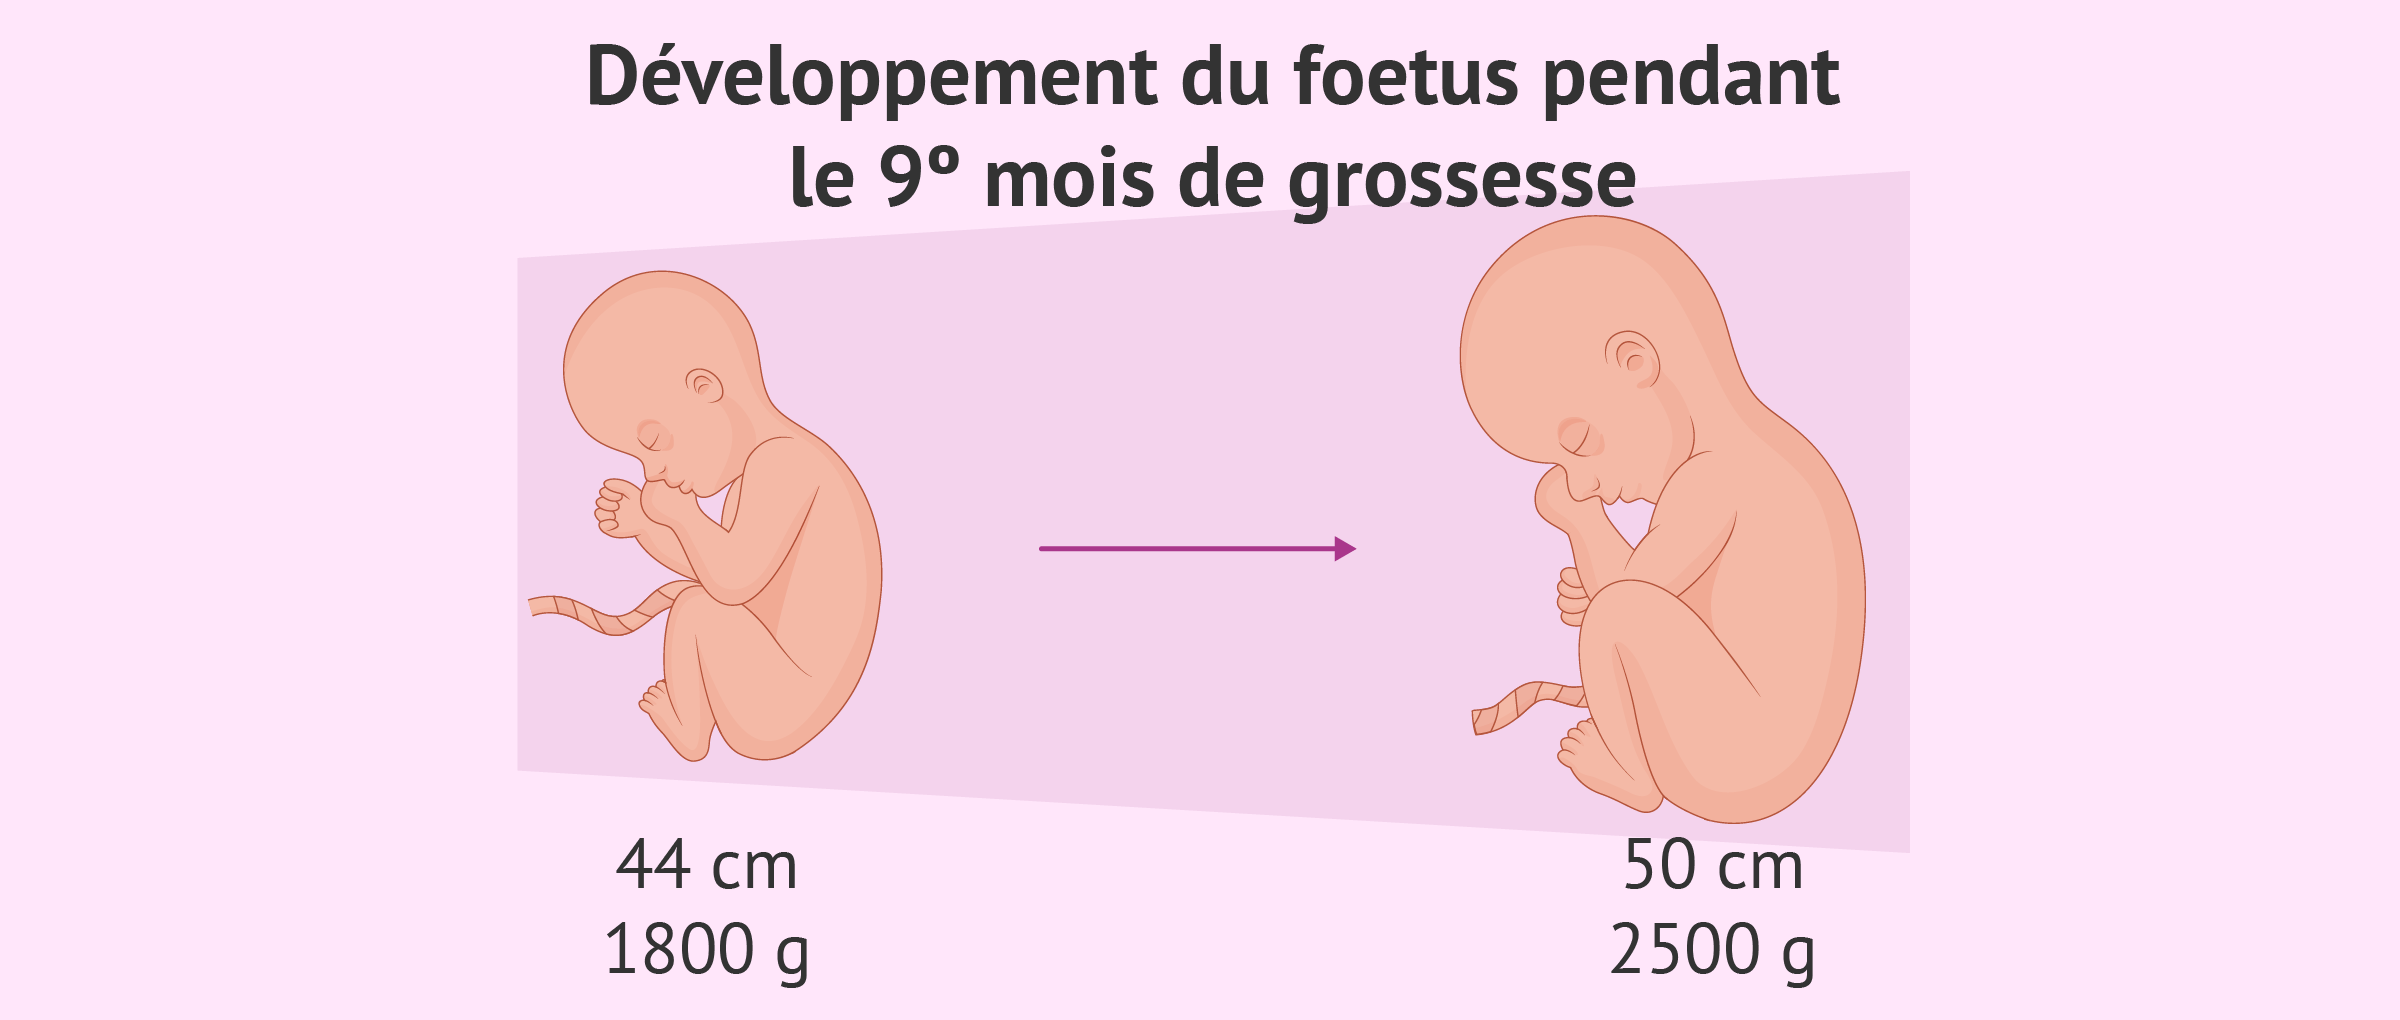 Développement du foetus au neuvième mois de grossesse